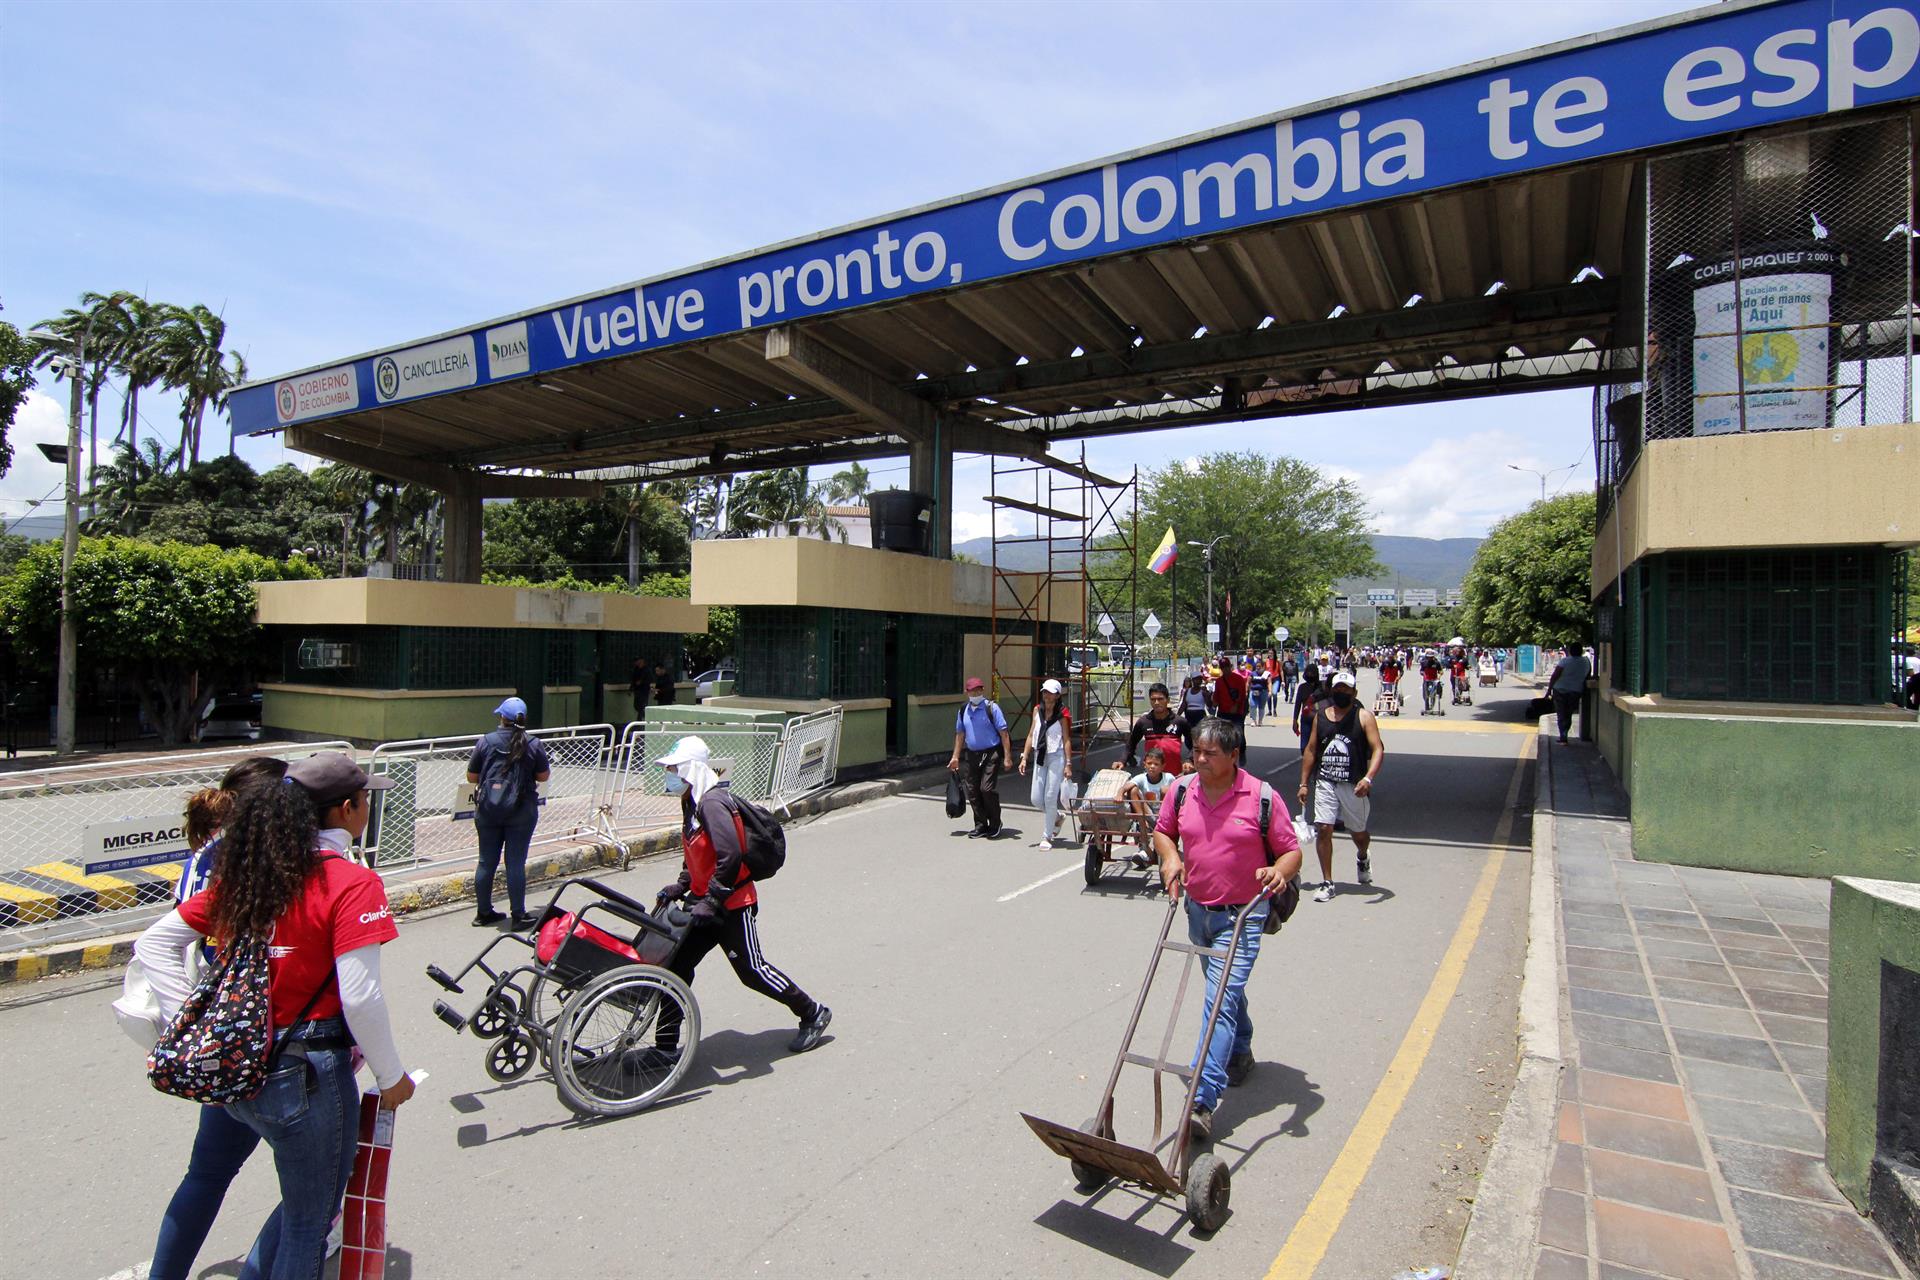 “Es una gran oportunidad”: Alcalde de Cúcuta ante pronta reapertura de la frontera con Venezuela